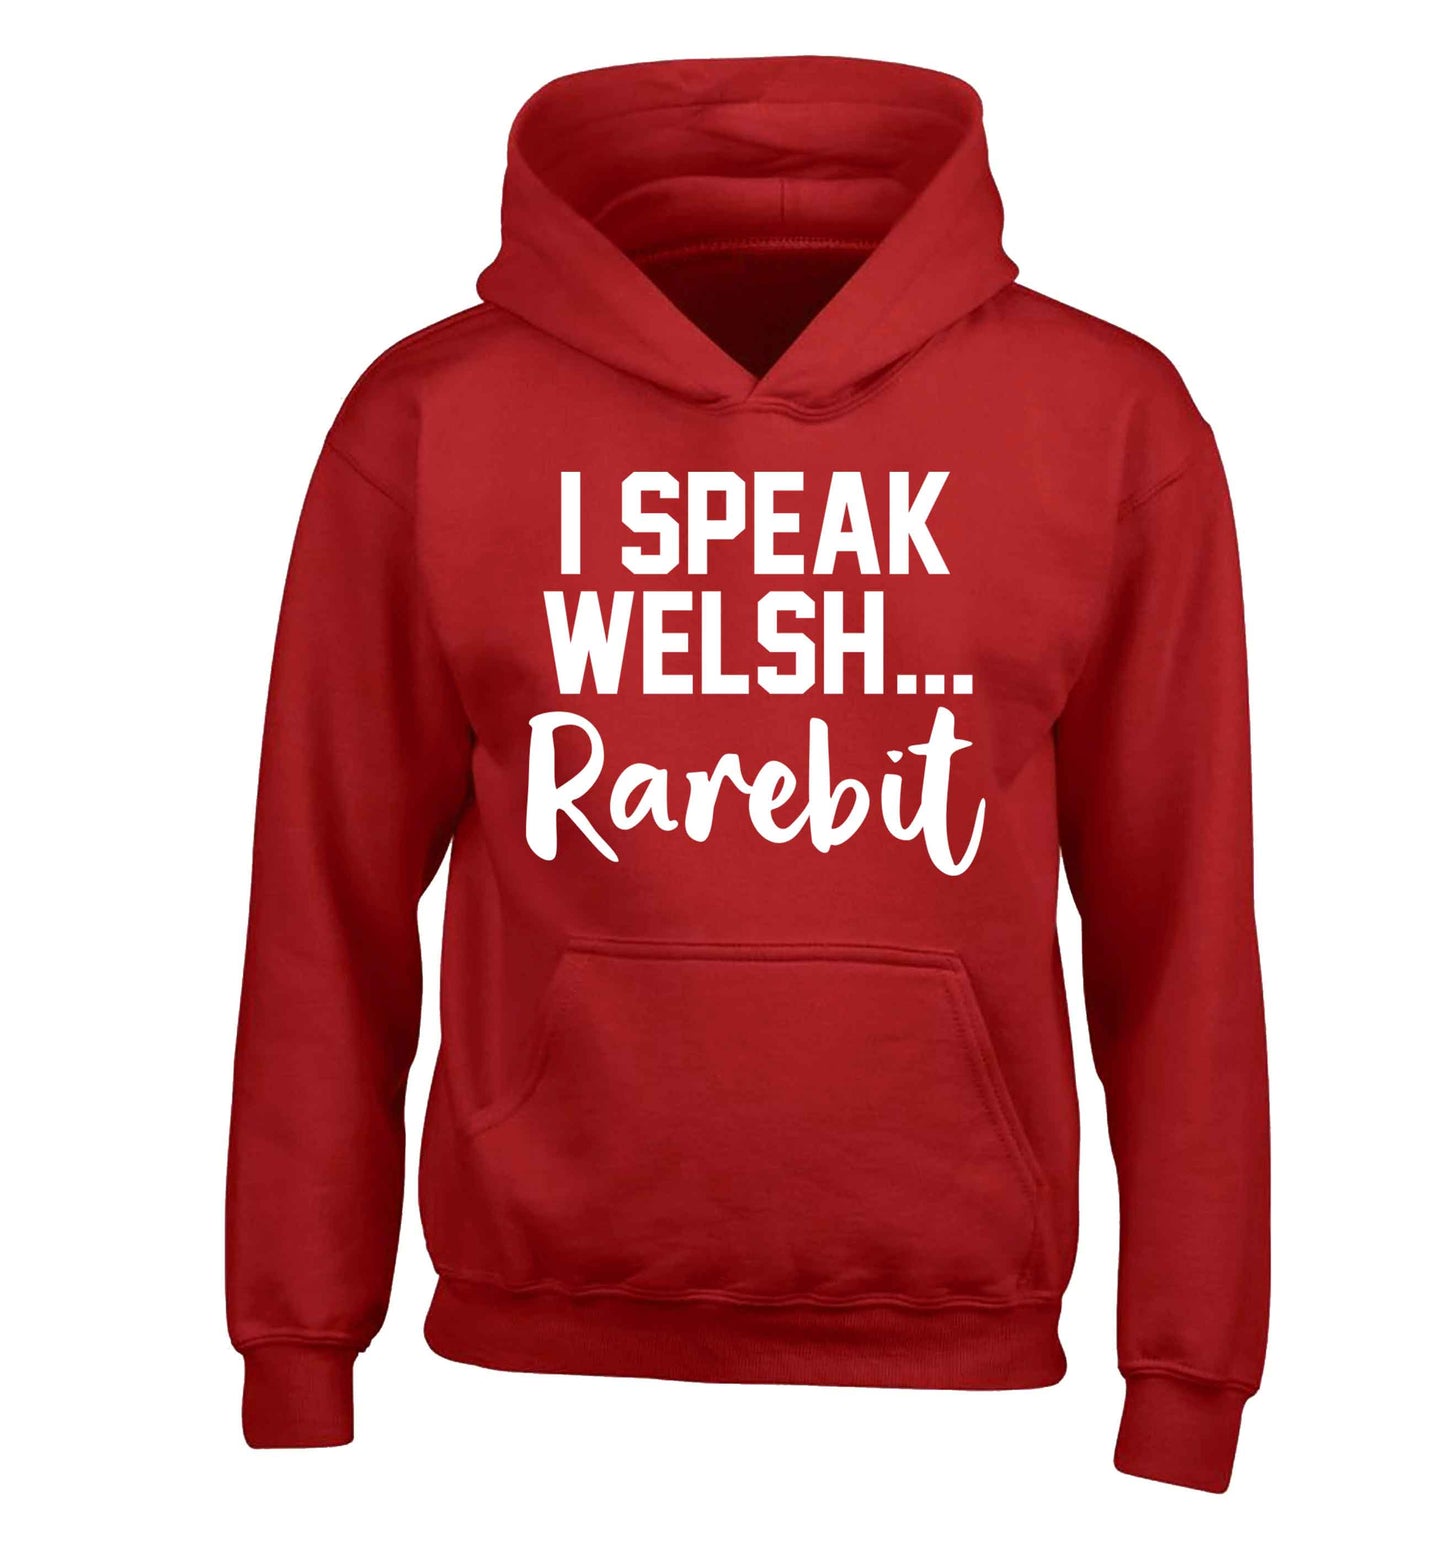 I speak Welsh...rarebit children's red hoodie 12-13 Years